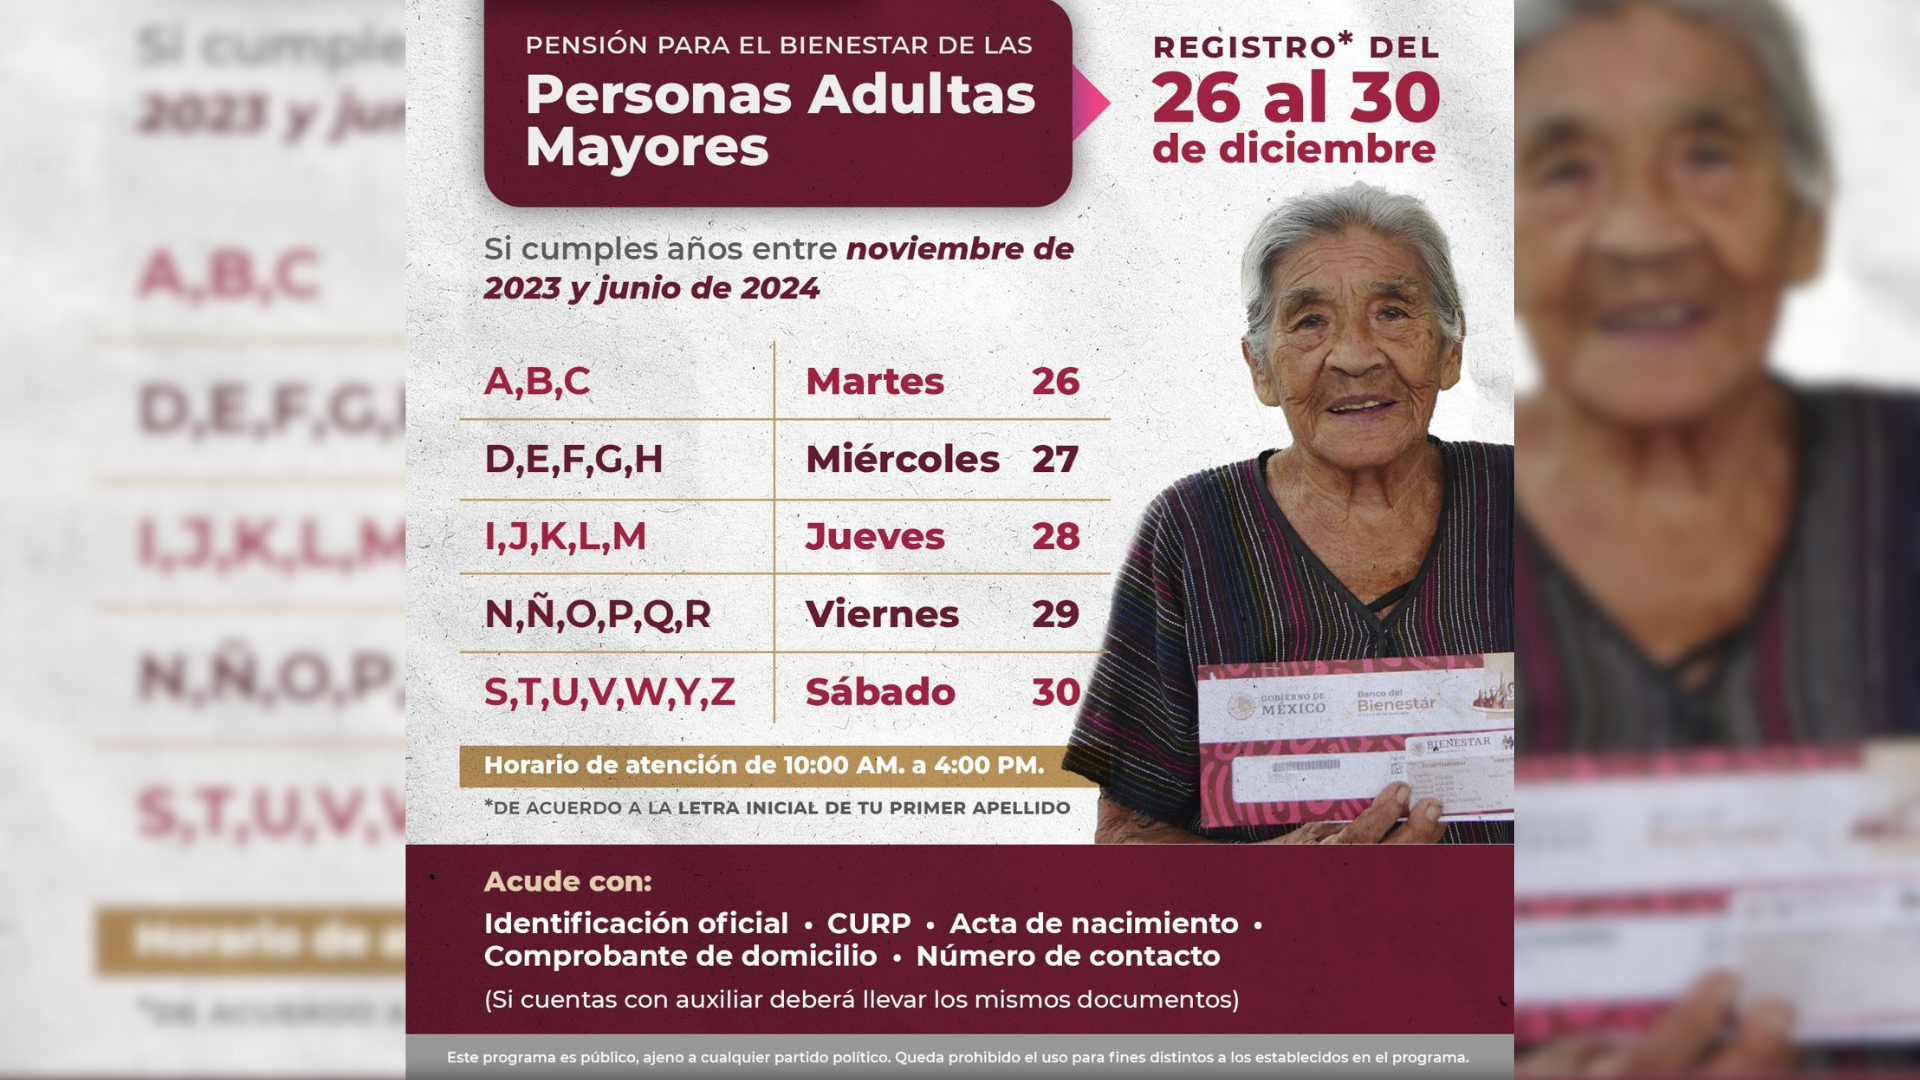 Del 26 al 30 de diciembre, se amplía registro de la pensión para personas adultas mayores